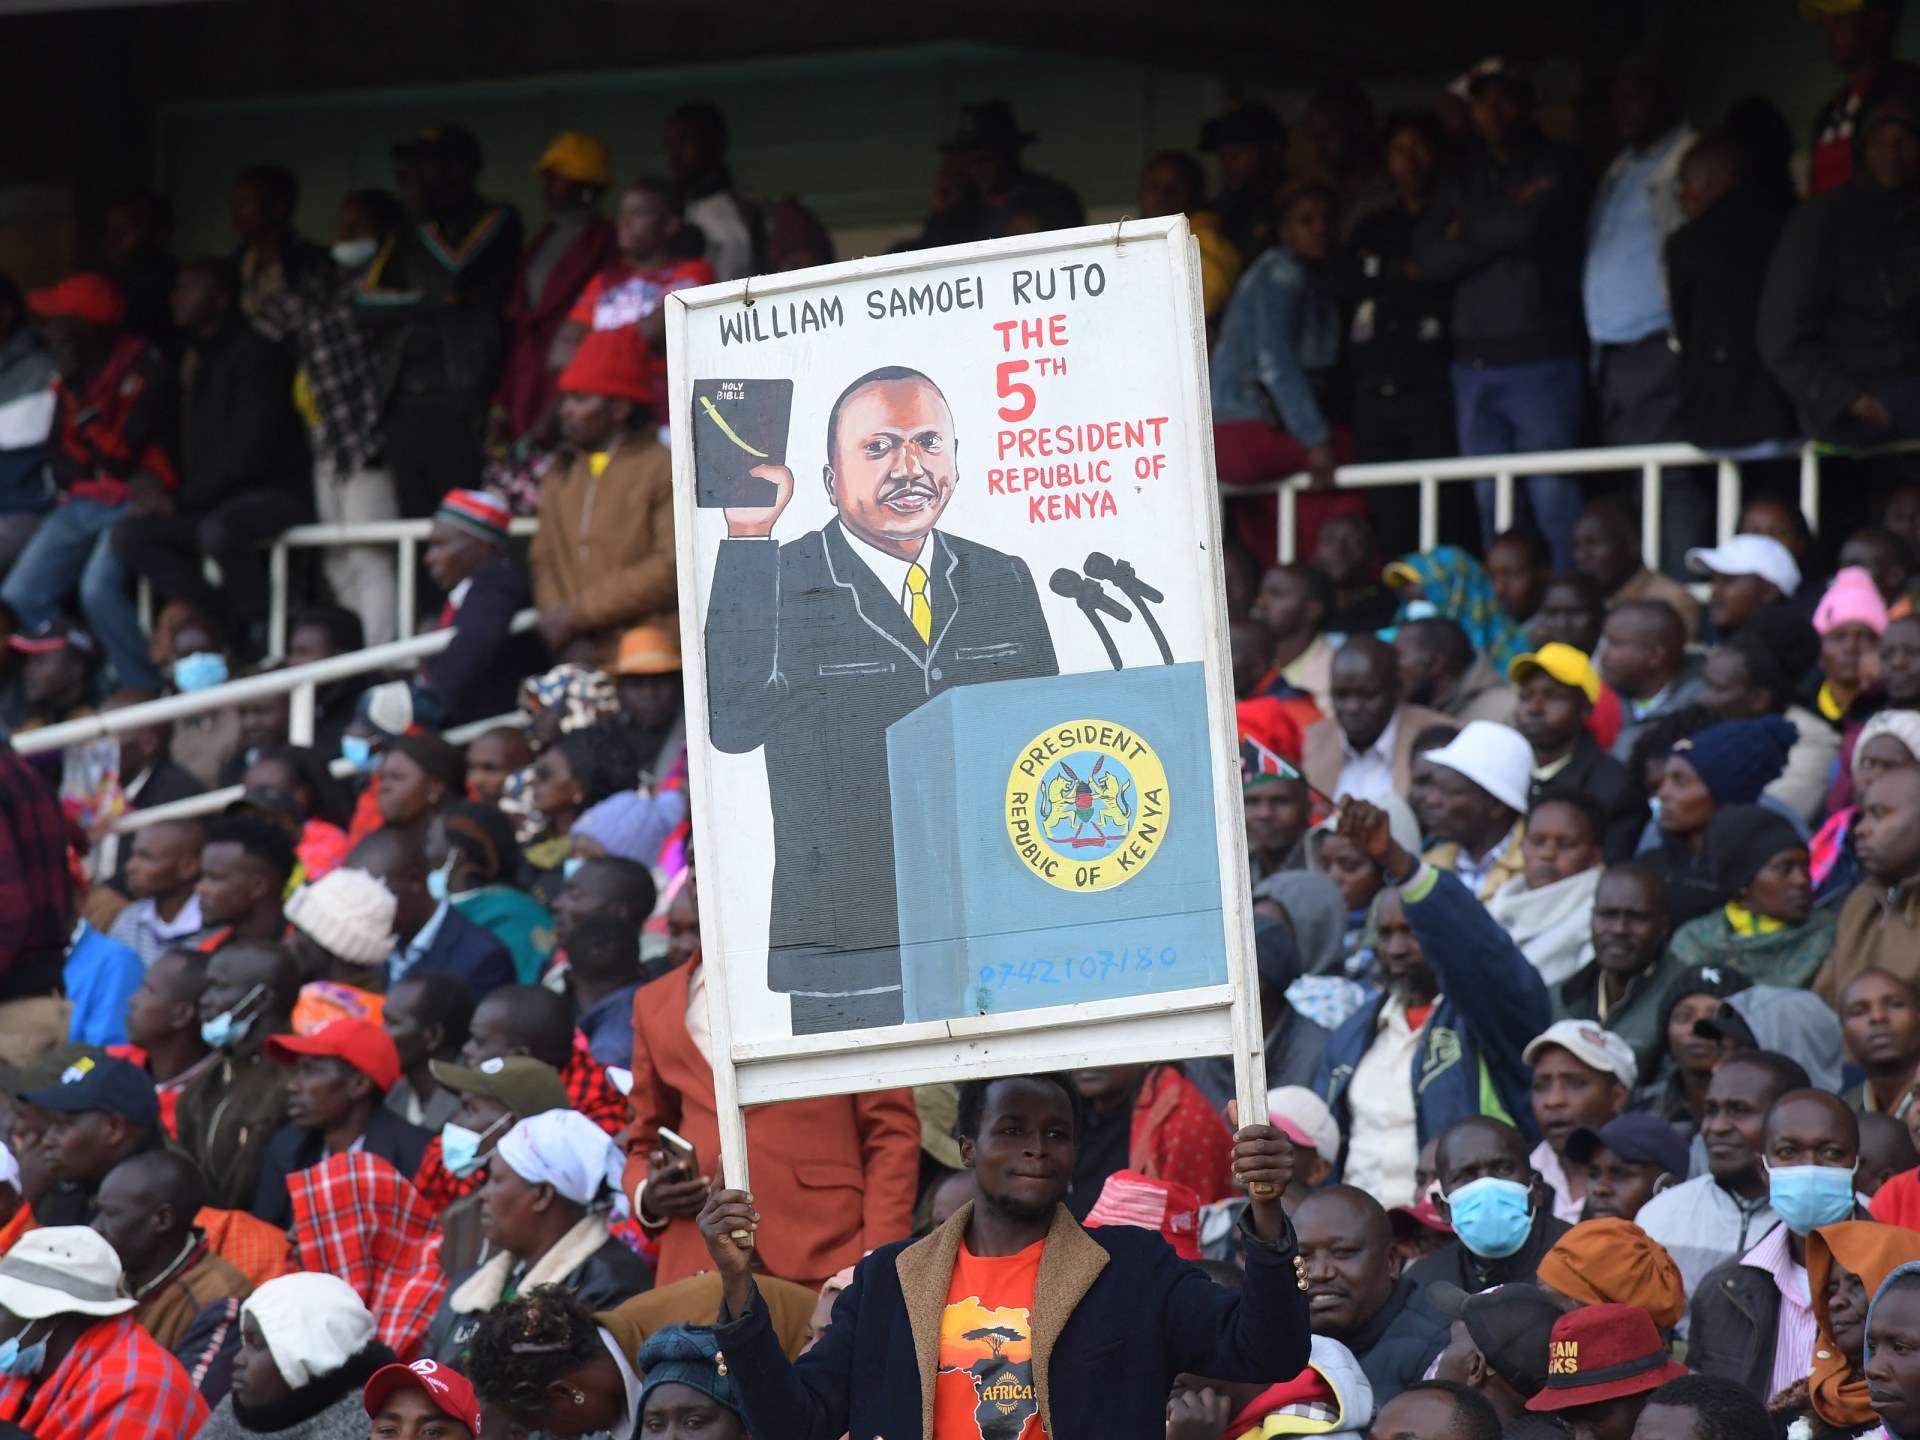 Stadium rush injures dozens as Kenya inaugurates President Ruto